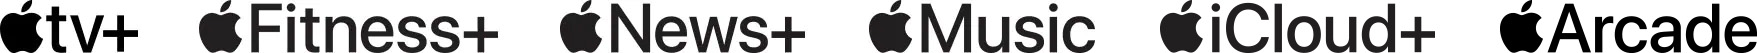 Apple TV+, Apple Fitness+, Apple News+ and Apple Music